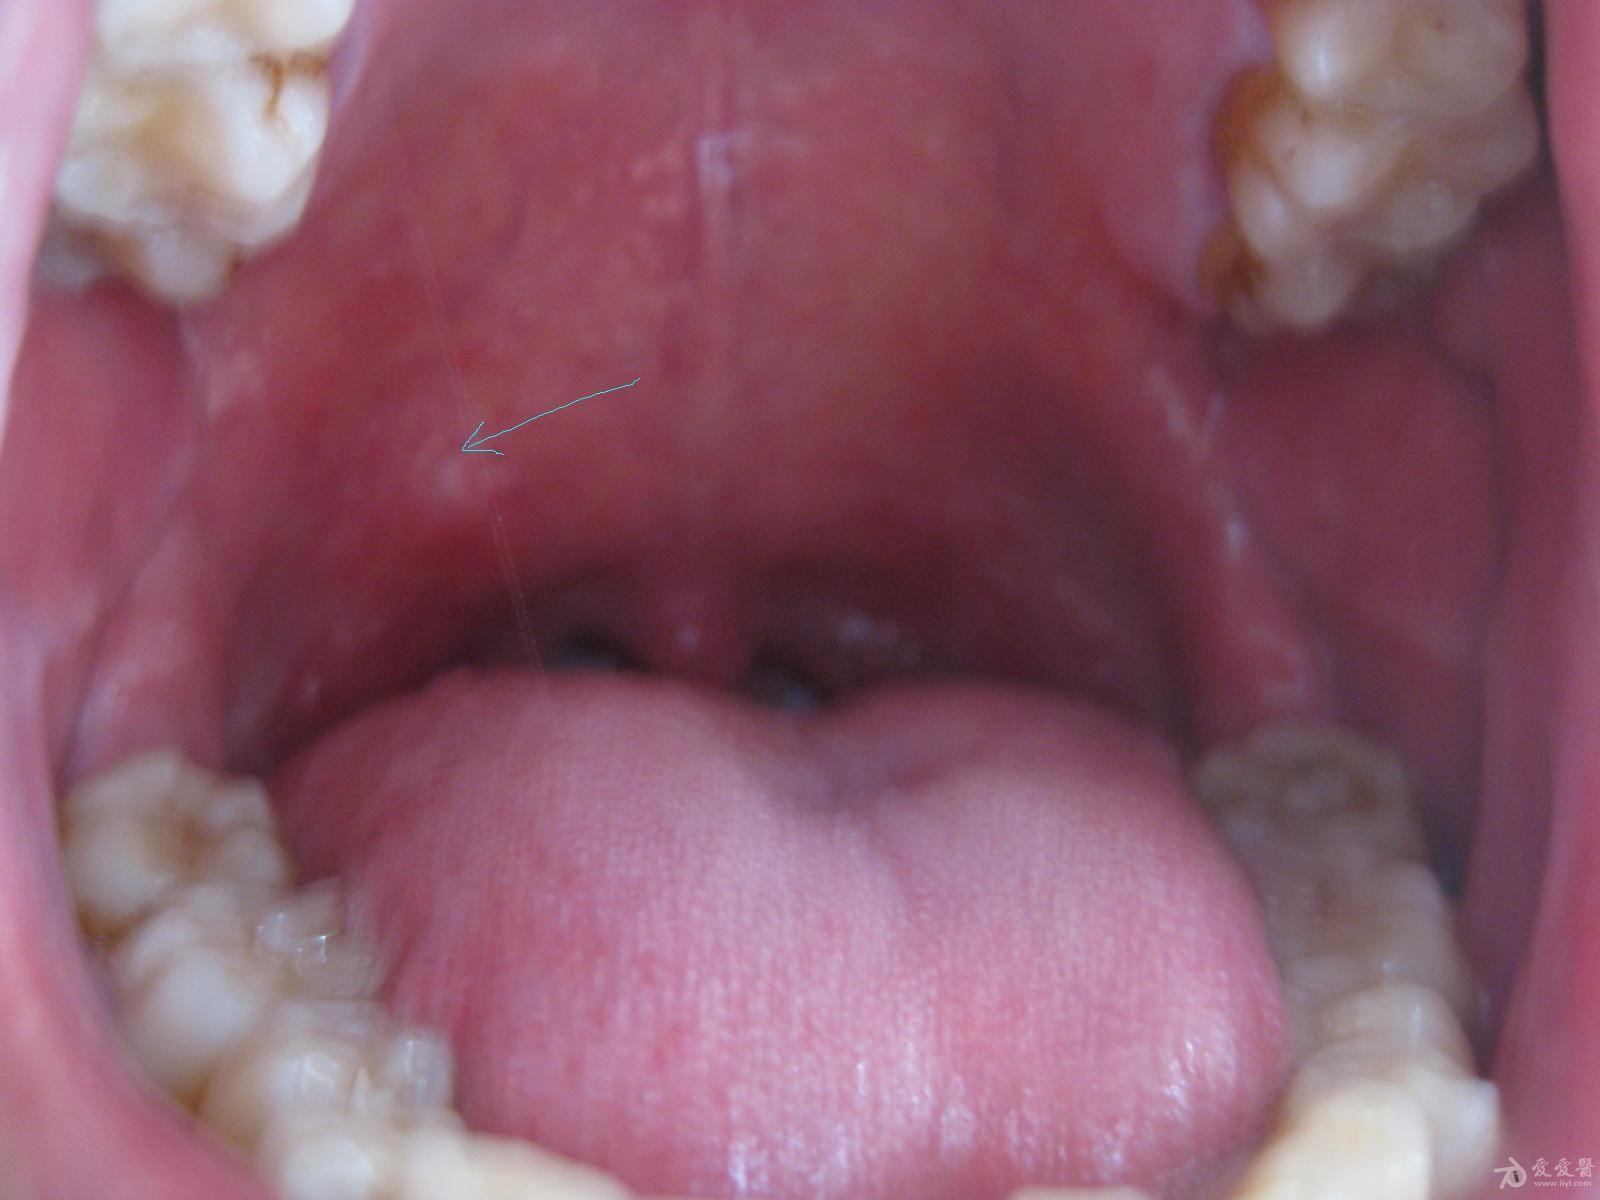 腭舌弓肿大图片